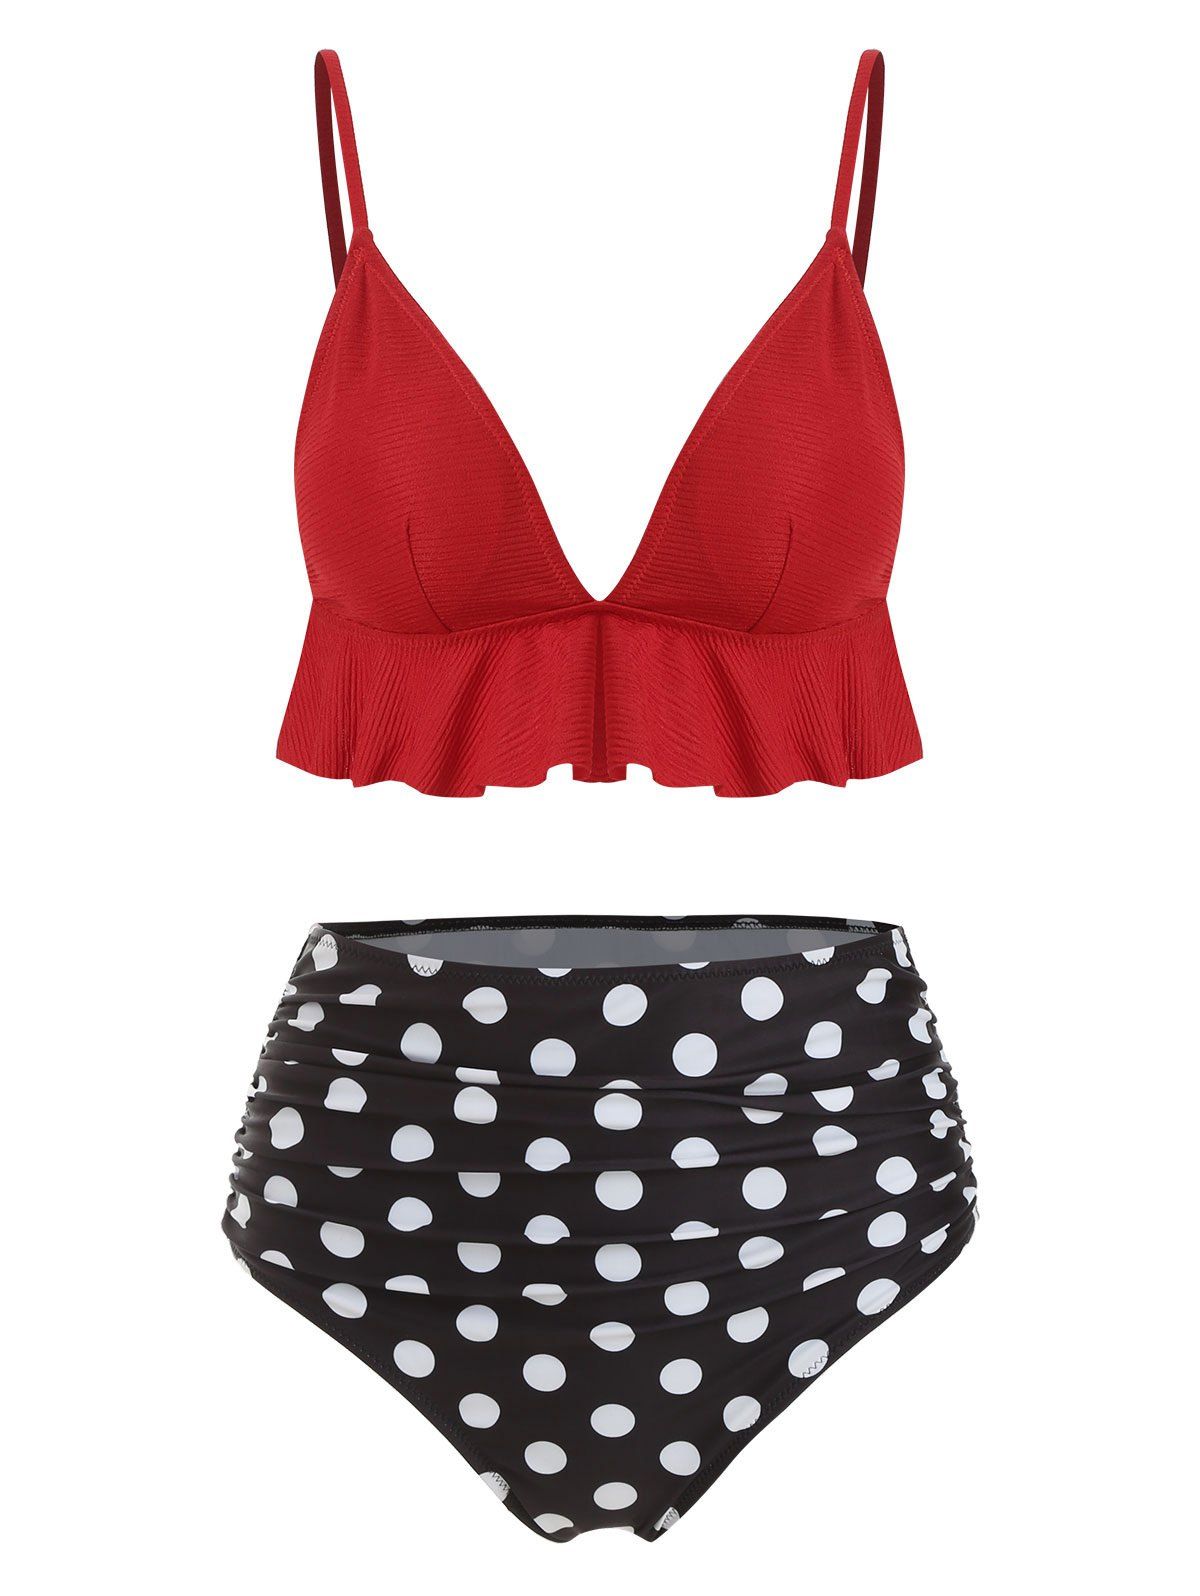 Crinkly Flounce Ruched Polka Dot Bikini Swimsuit - RED XL